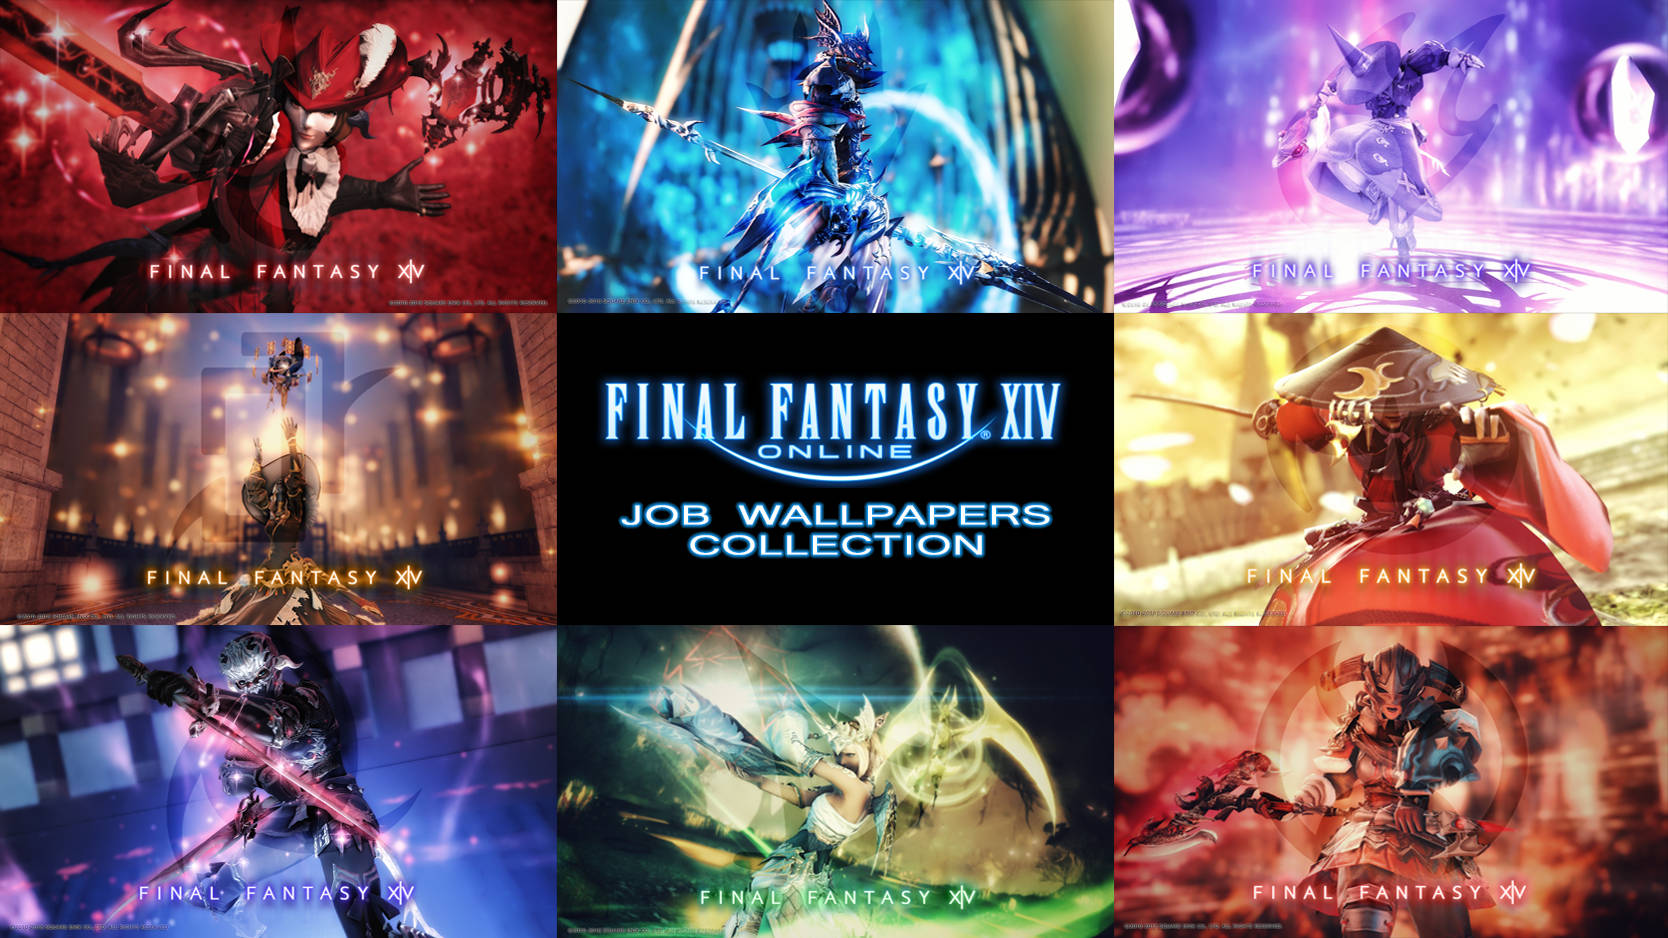 Låsupp Din Sanna Potential Med Jobbkollektionen I Final Fantasy 14. Wallpaper